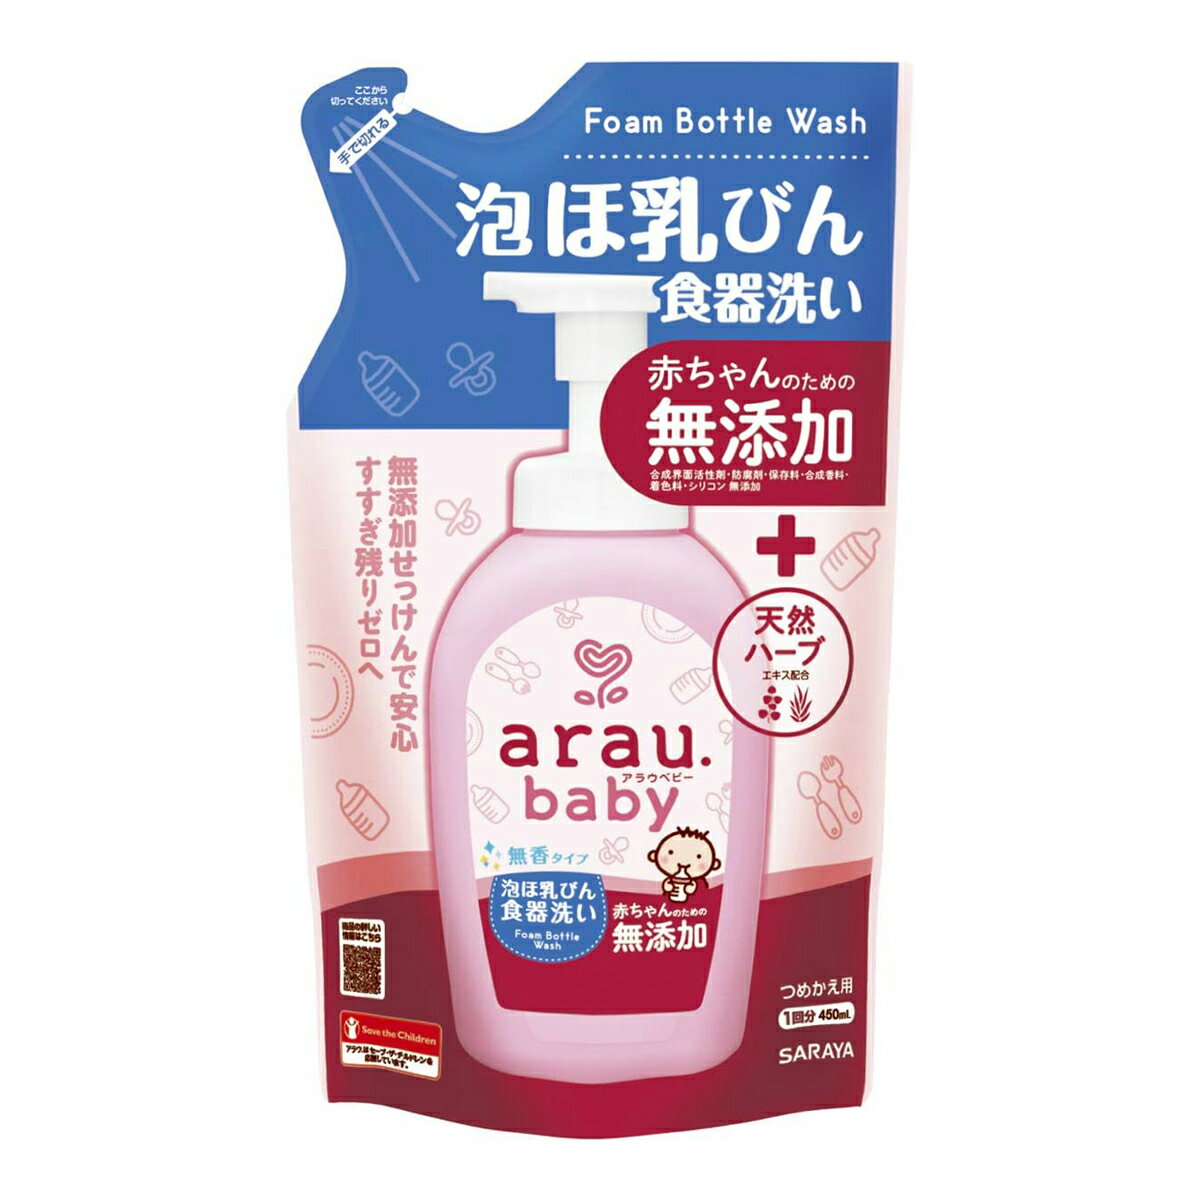 商品名：アラウ．ベビー　泡 ほ乳ビン食器洗い 詰替　450mL内容量：450mlブランド：arau．ベビー原産国：日本無添加せっっけんに天然由来のすすぎ成分配合詰替1回分。赤ちゃんの口にするものにも安心の泡ほ乳びん食器洗い（合成界面活性剤、合成香料、着色料、保存料無添加）。無添加せっけんに天然由来のすすぎスッキリ成分（ソホロースリピッド）を配合。JANコード:4973512258206商品番号：101-17880姫路流通センター＞ ベビー 広告文責：アットライフ株式会社TEL 050-3196-1510※商品パッケージは変更の場合あり。メーカー欠品または完売の際、キャンセルをお願いすることがあります。ご了承ください。